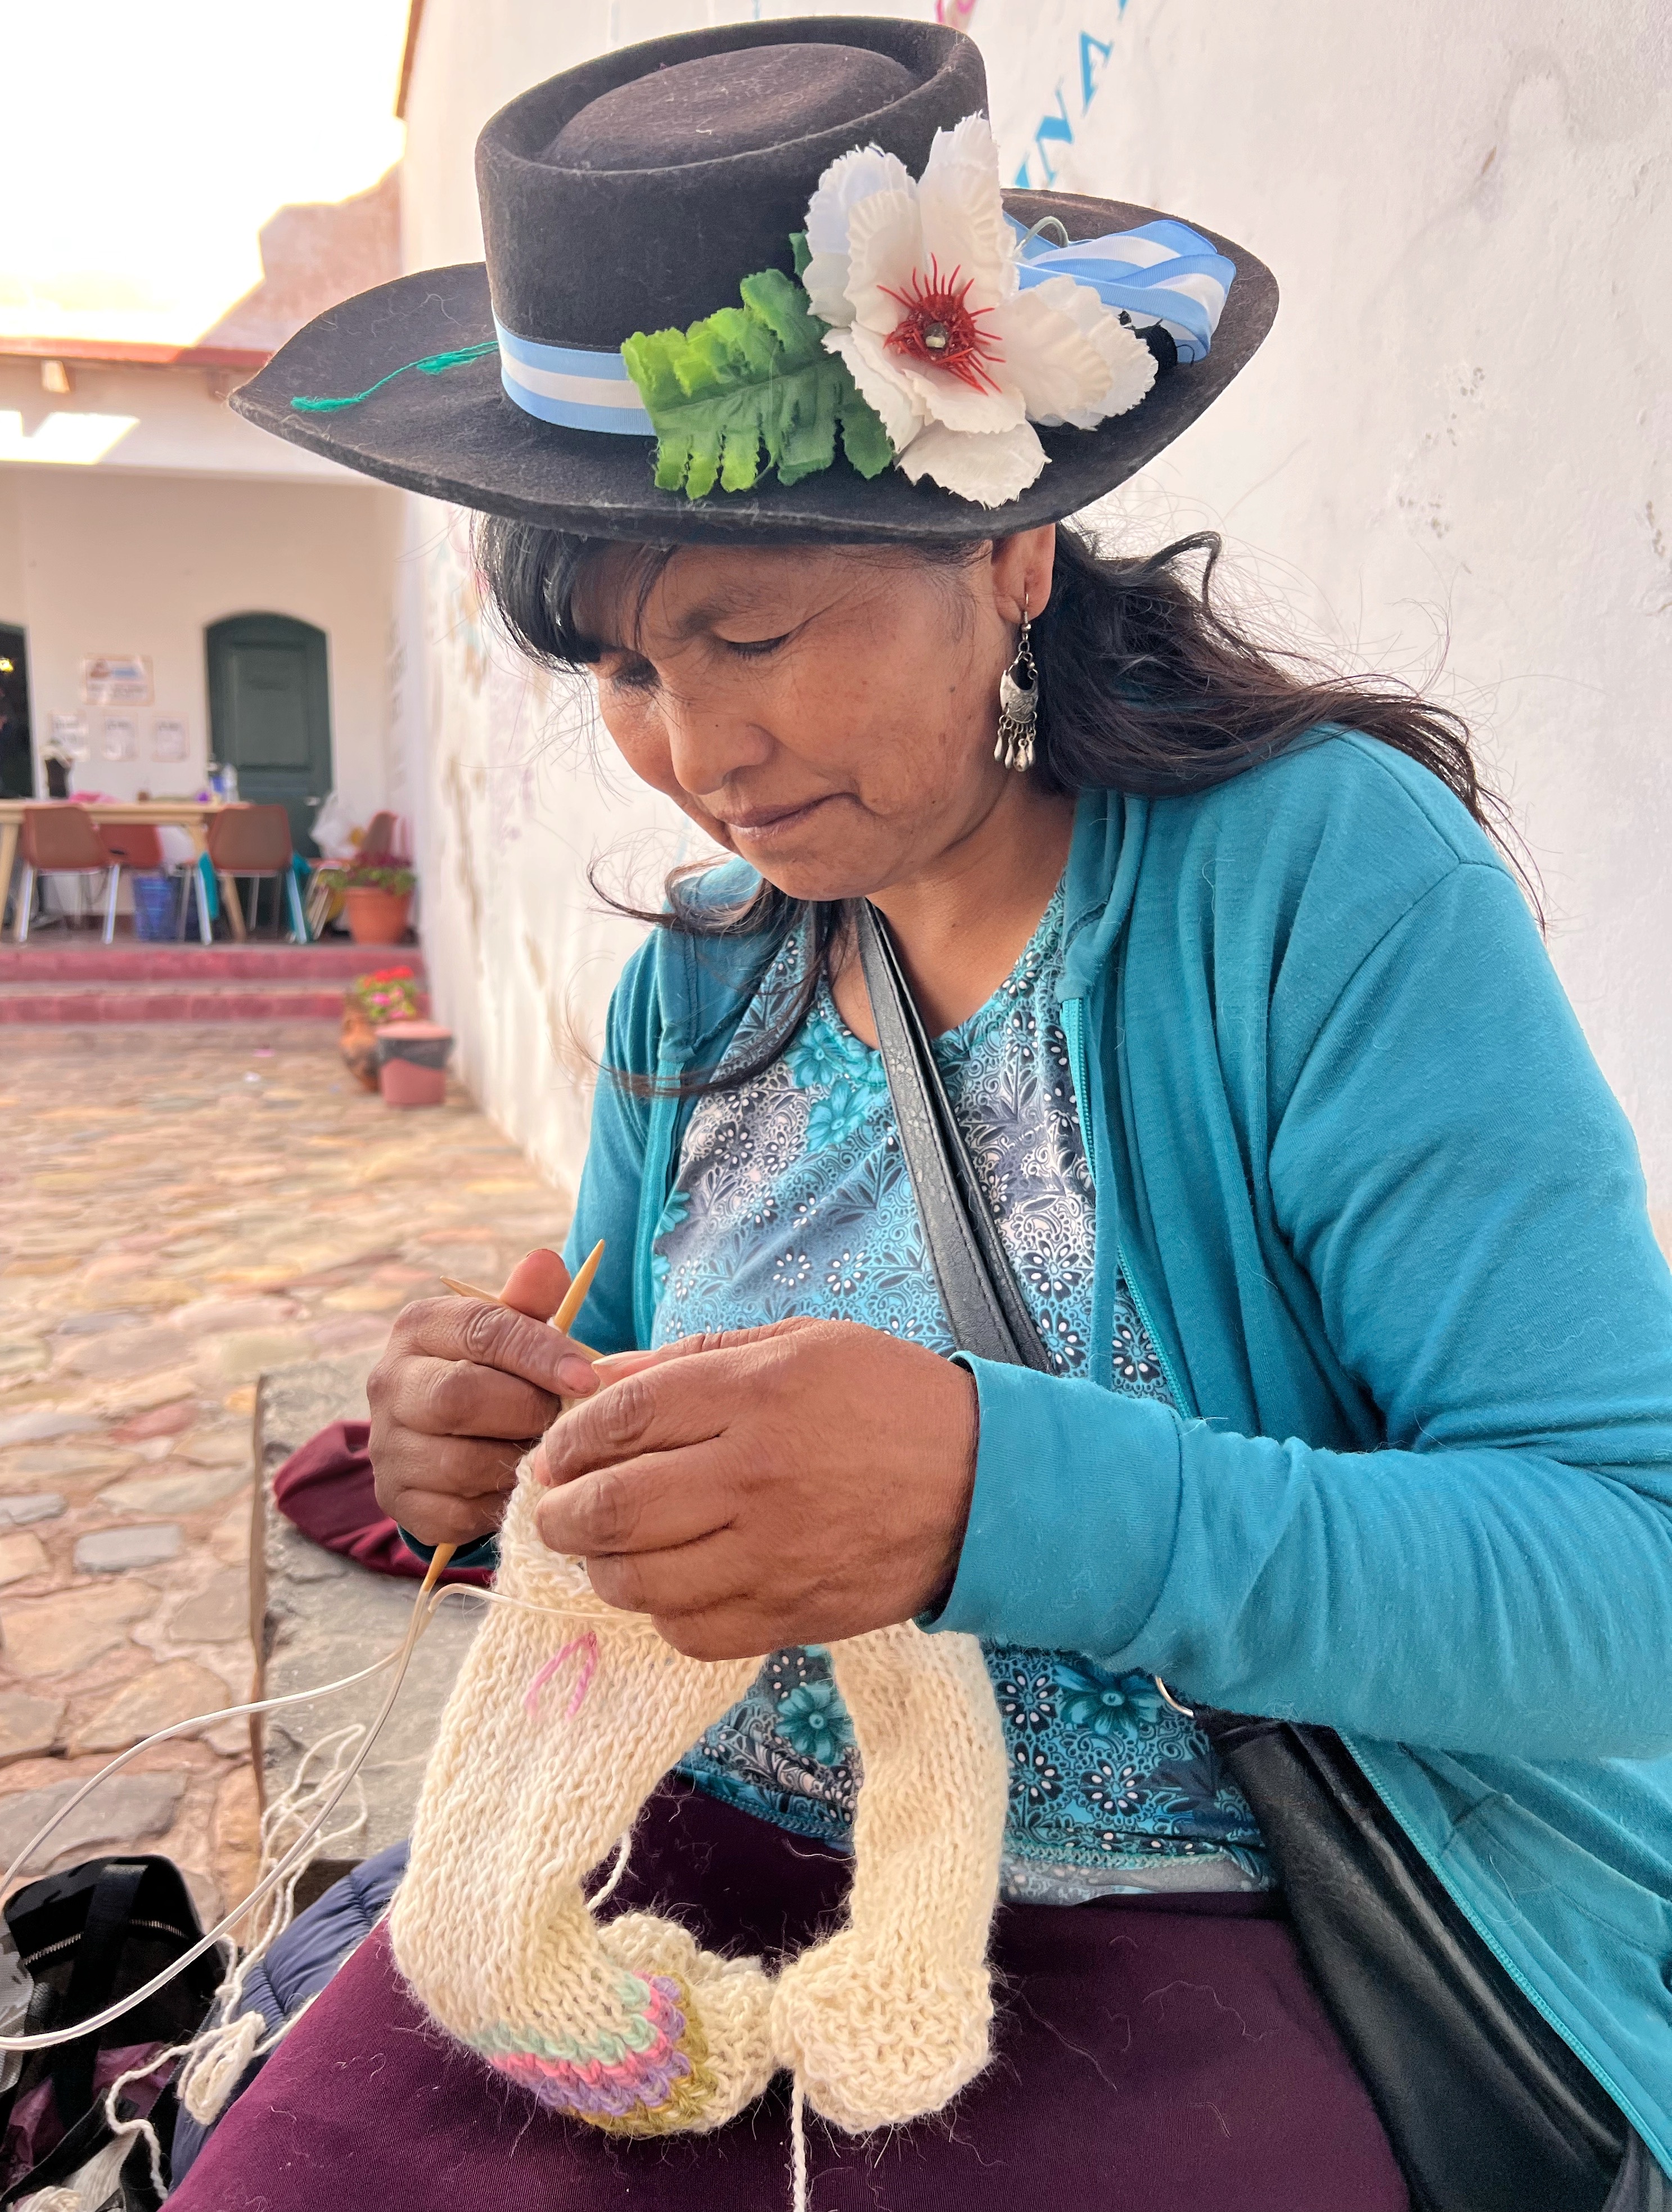 Sabina Cruz, tía de Celeste, y maestra tejedora de Maimará, quien también comparte sus conocimientos junto a sus hermanas (Foto: Celeste Valero)